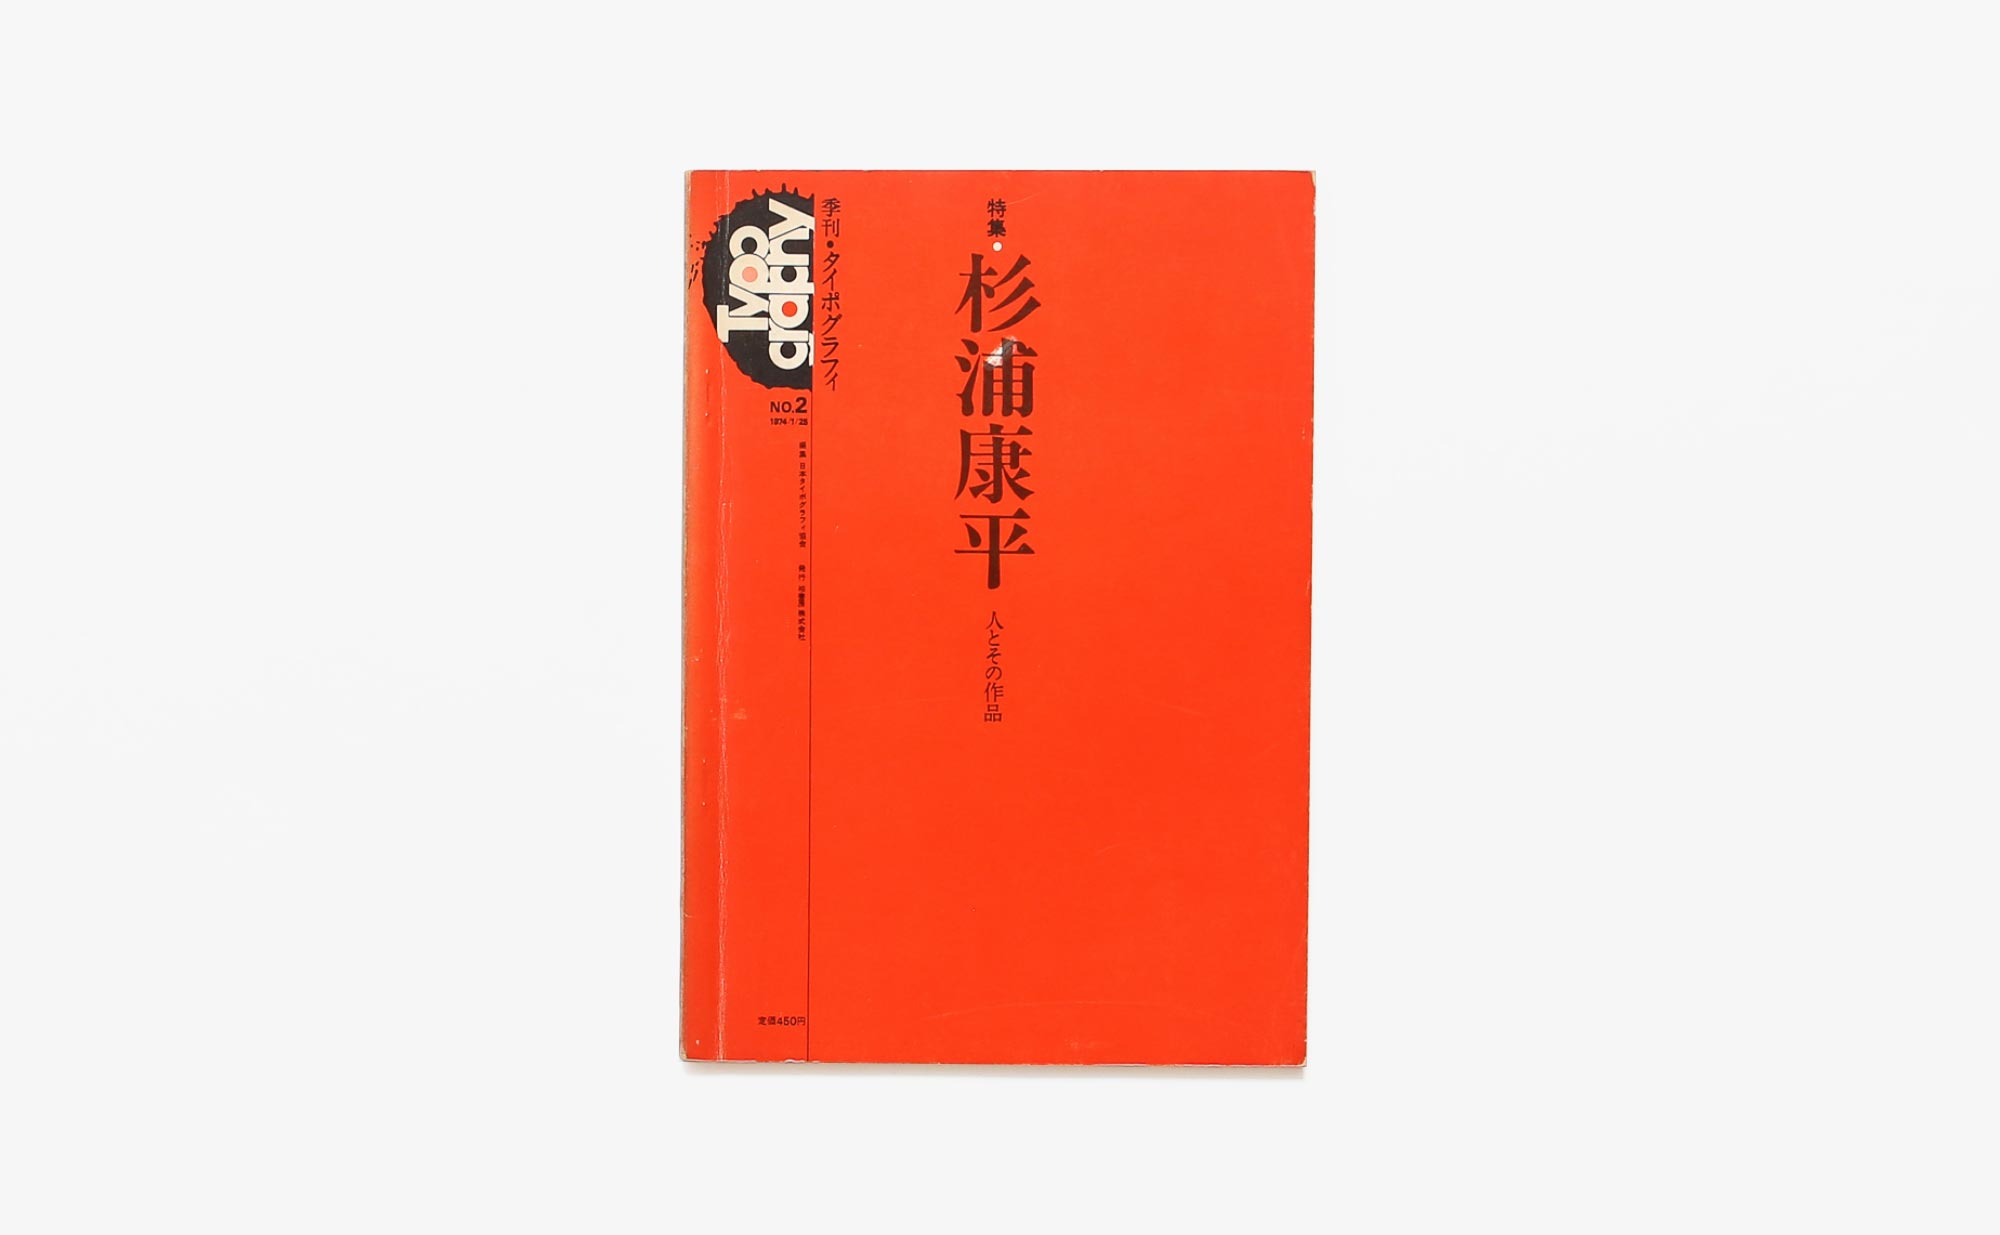 季刊タイポグラフィ No.2 杉浦康平 人とその作品